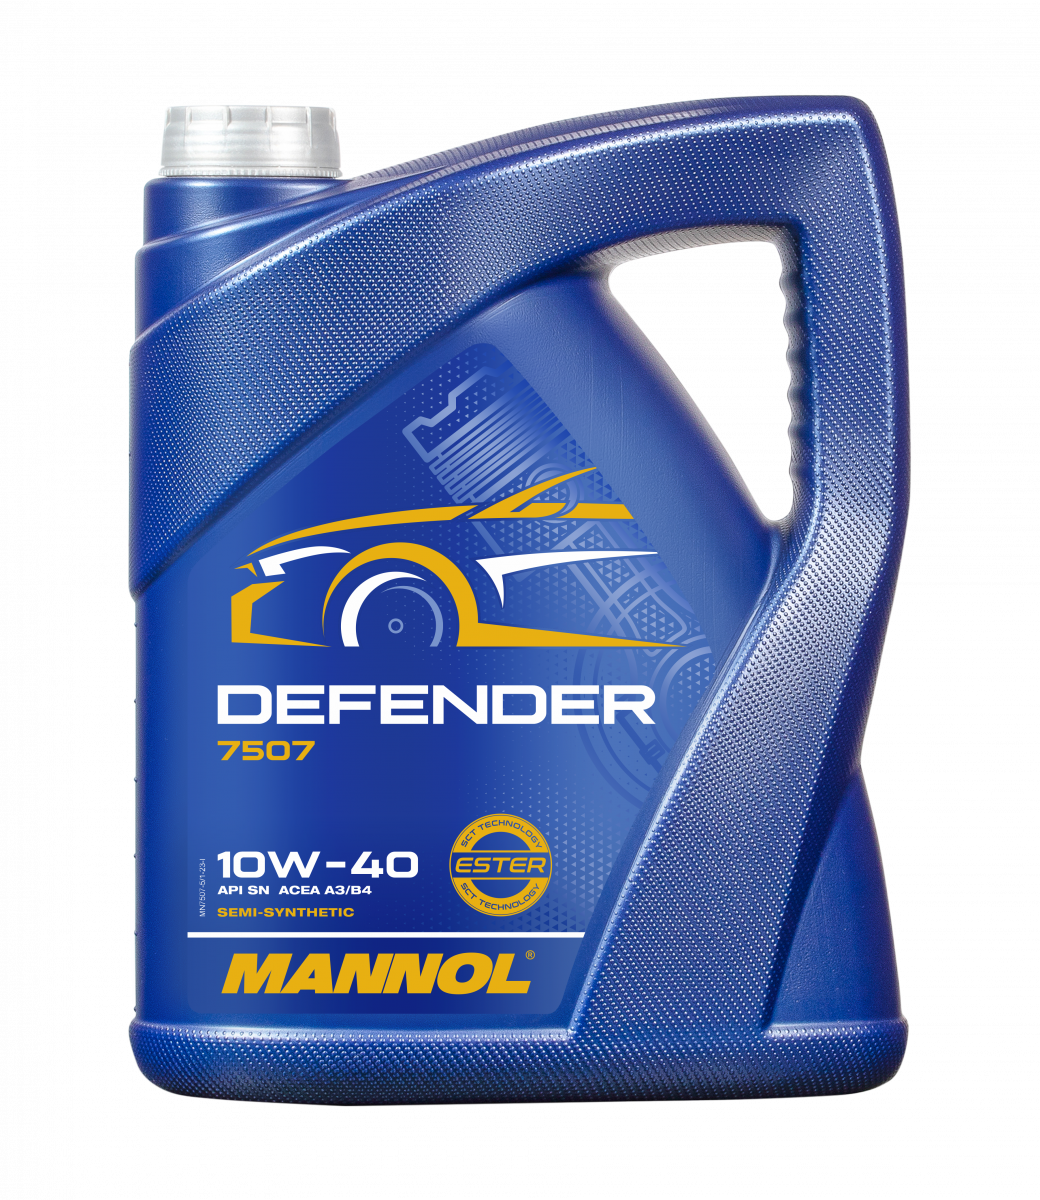 5 Liter Mannol 10W-40 Defender - € 15,99